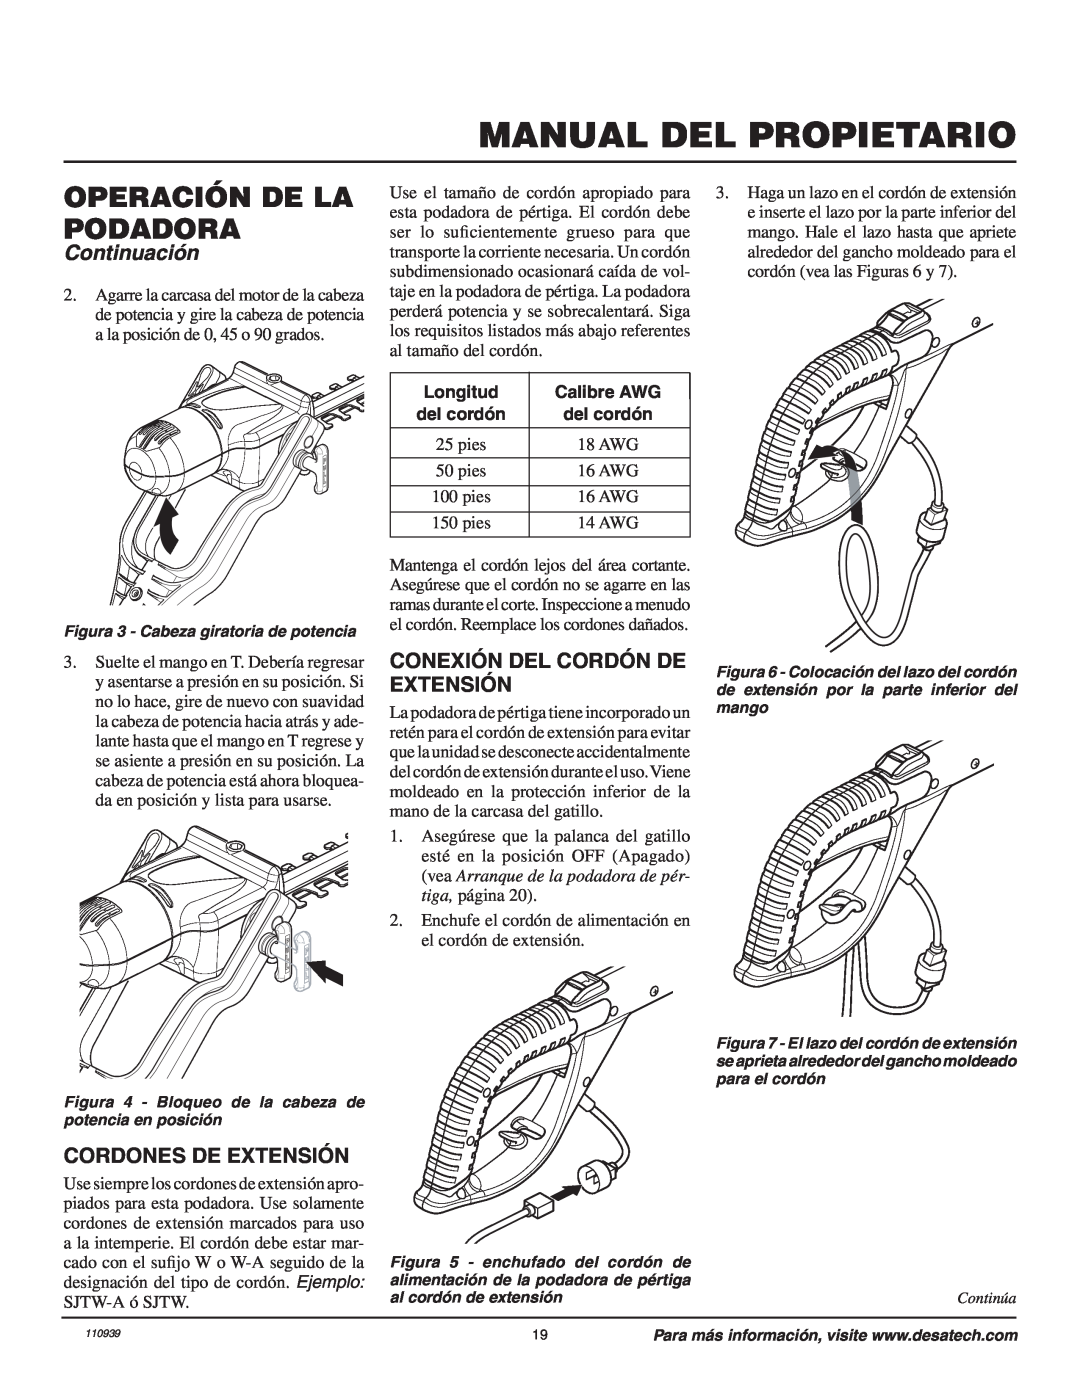 Remington 110946-01A Conexión Del Cordón De Extensión, Cordones De Extensión, Manual Del Propietario, Continuación 